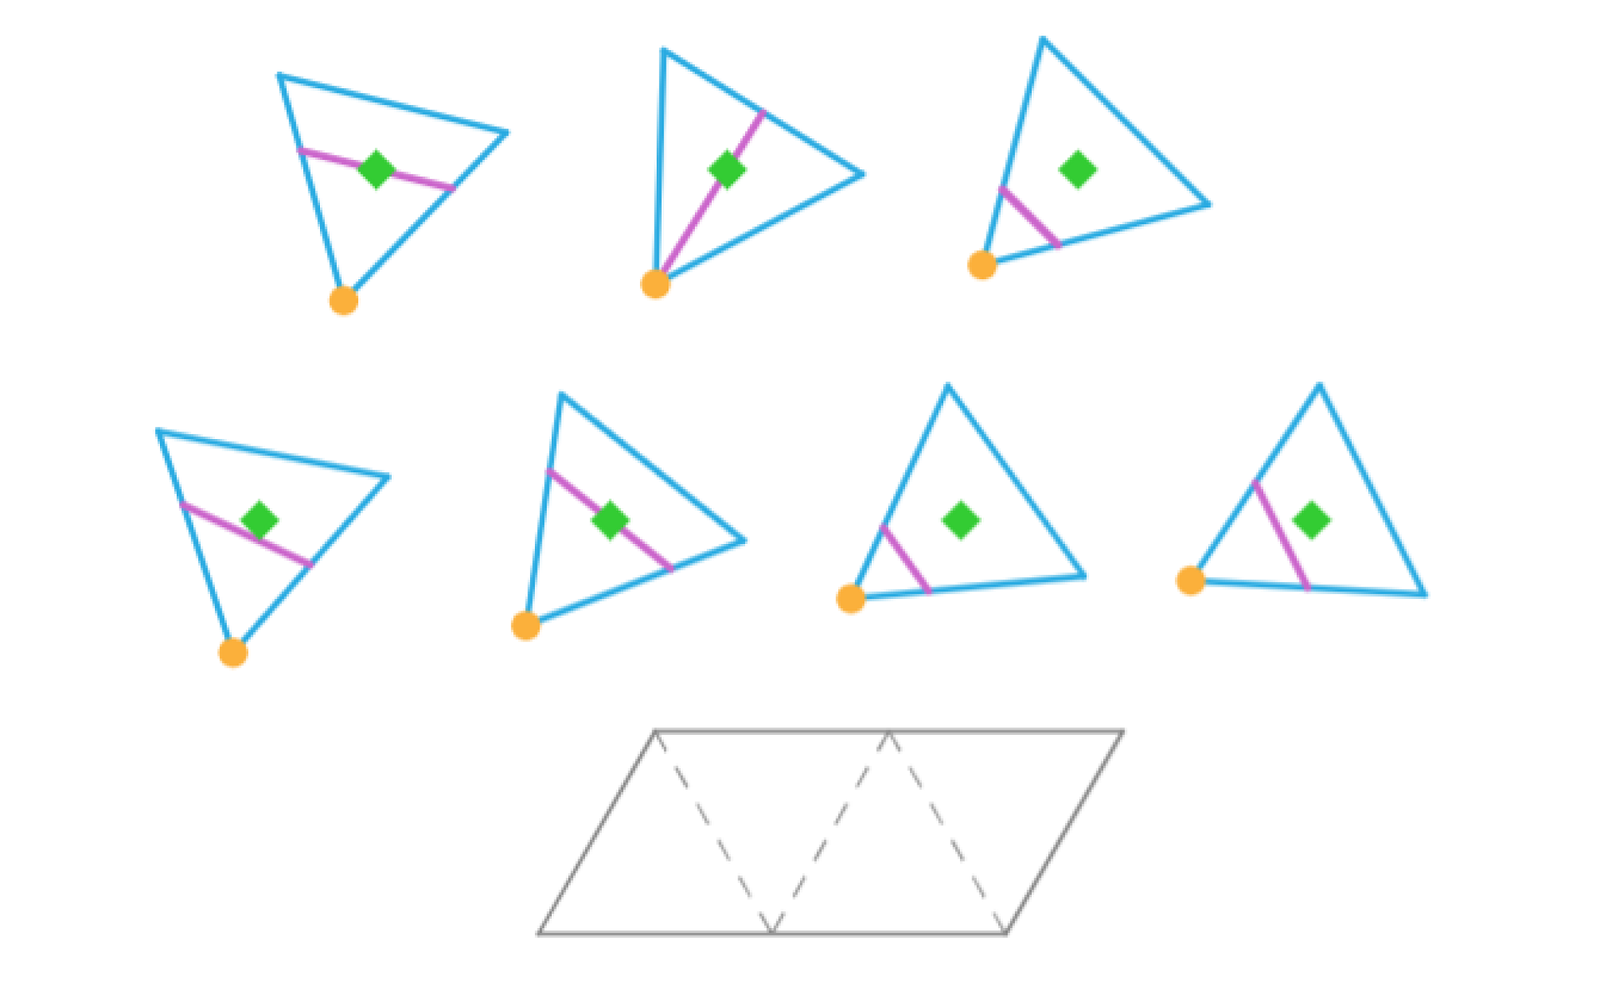 Aplet przedstawia siedem trójkątów równobocznych, w których w różny sposób poprowadzono odcinki reprezentujące odcinki planowanego przecięcia. Aplet daje możliwość przesuwania trójkątów oraz ich obracania. Do utworzenia siatki potrzebujemy czterech trójkątów. Spośród przedstawionych opcji należy wybrać, te w których odcinki są równoległe do jednego z boków trójkąta i następnie ułożyć w taki sposób aby odcinki te stykały się ze sobą i jednocześnie zostały ułożone w kształt równoległoboku.